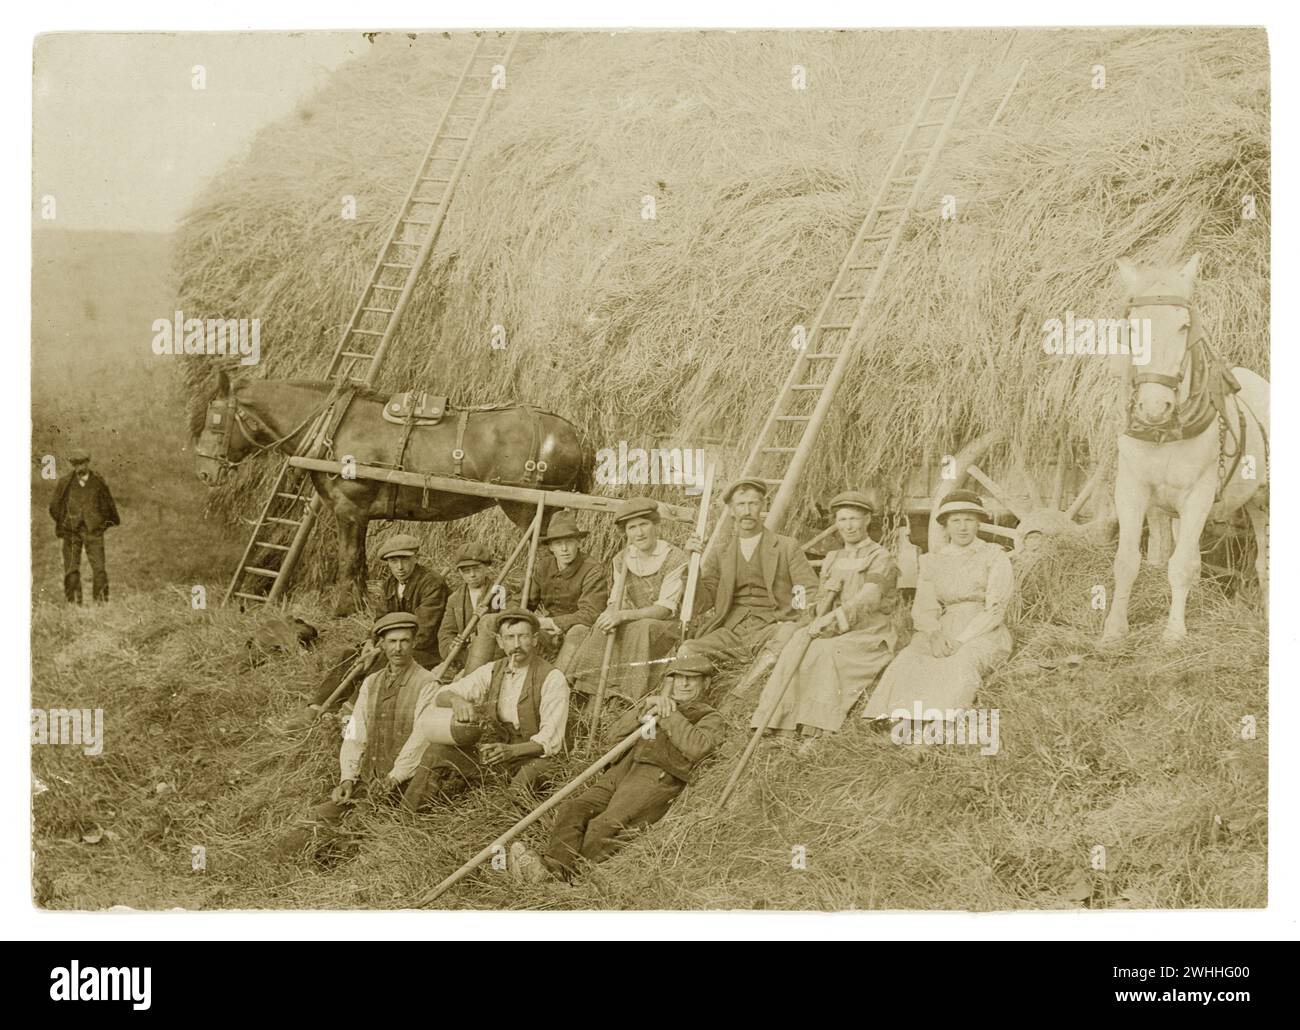 Die erste Postkarte aus der Zeit des 1. Weltkriegs war eine Ernteszene mit Landarbeitern. Eine davon ist ein Landarmeermädchen, das ein dreimonatiges Armband trägt. Auf der Rückseite steht Preston Court Farm unbekannter Ort. Vom 1916 Stockfoto